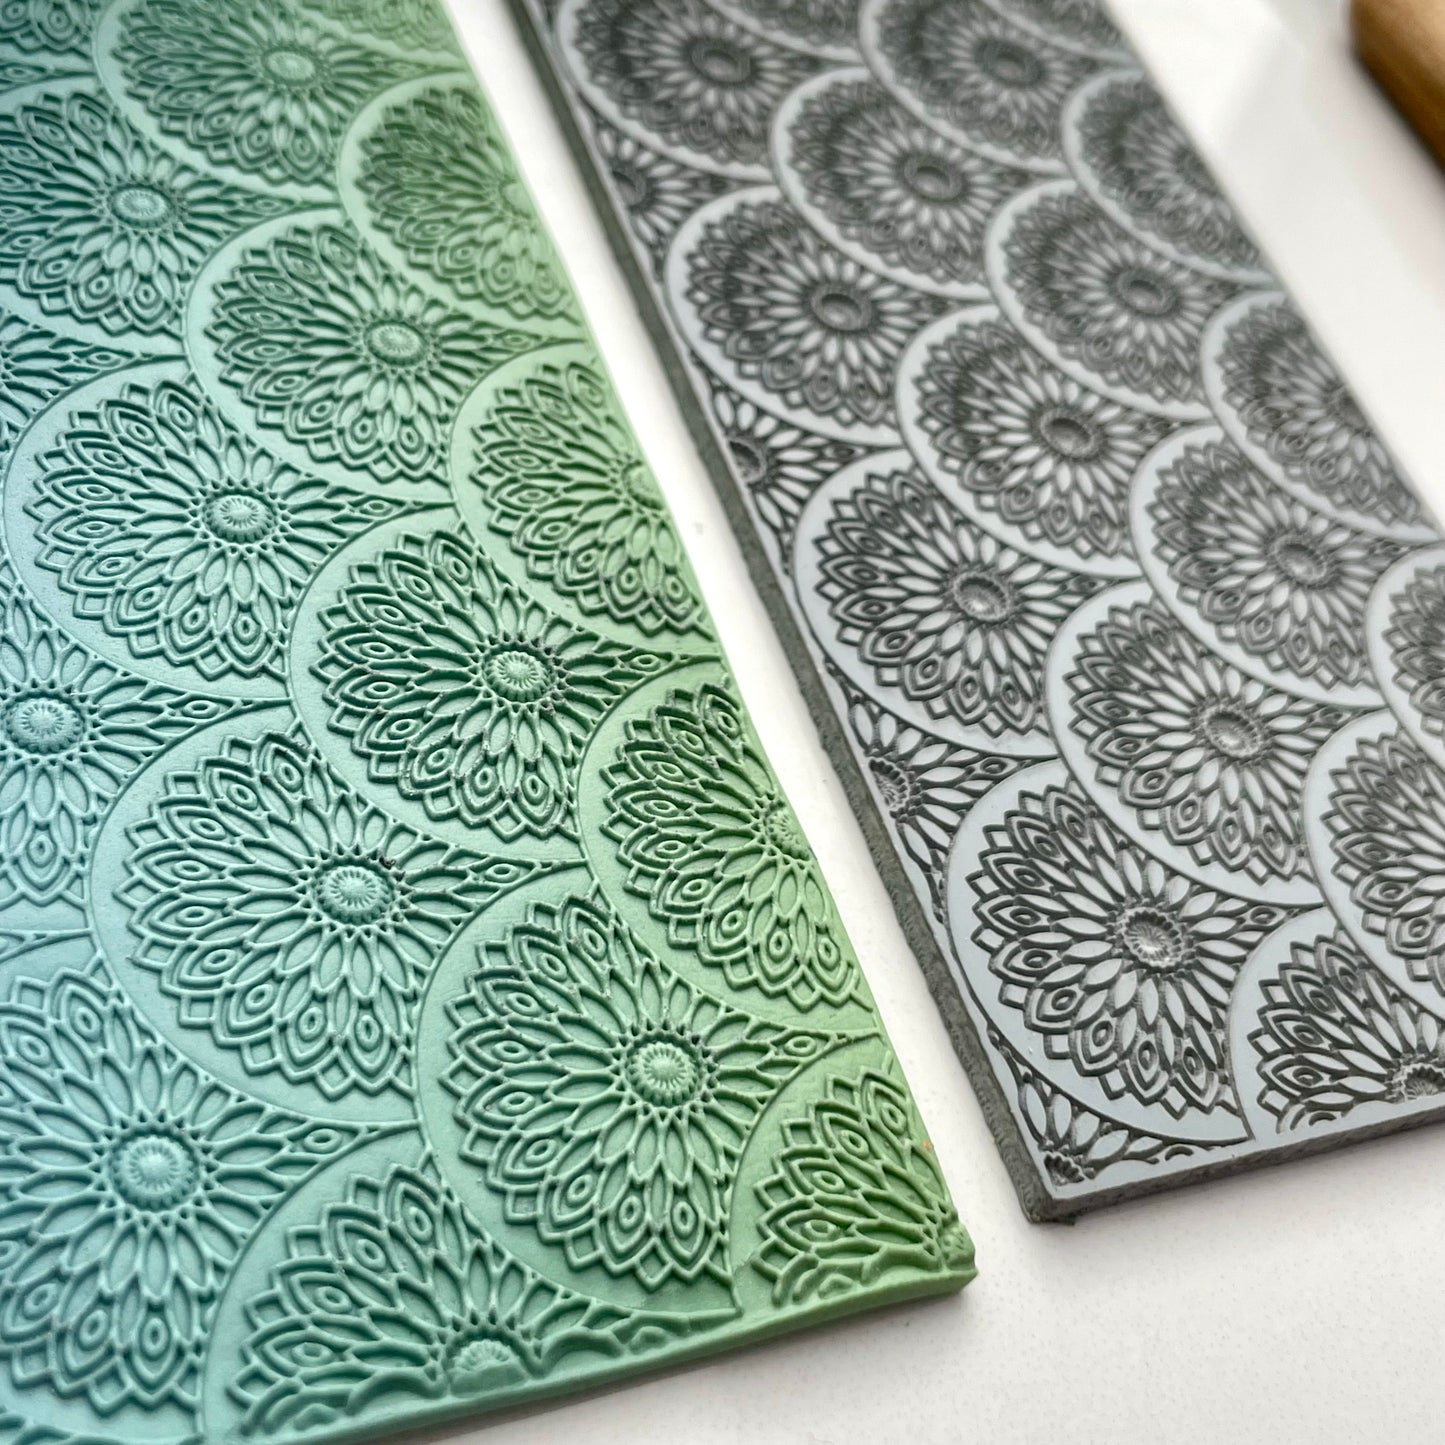 Mandala pattern #3 texture mat